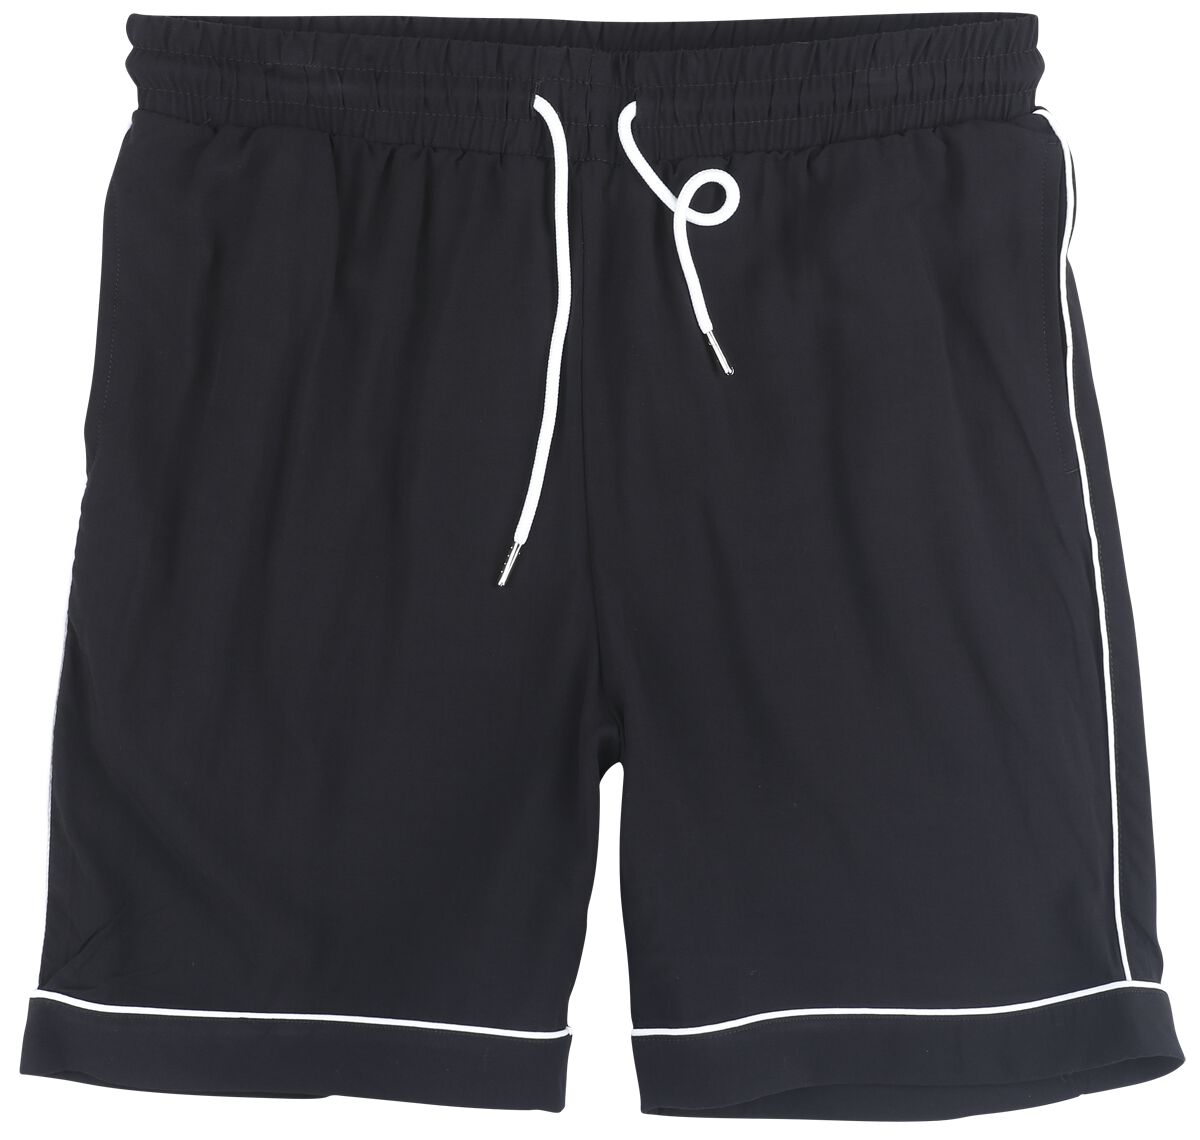 Urban Classics Short - Bowling Shorts - S bis 3XL - für Männer - Größe L - schwarz